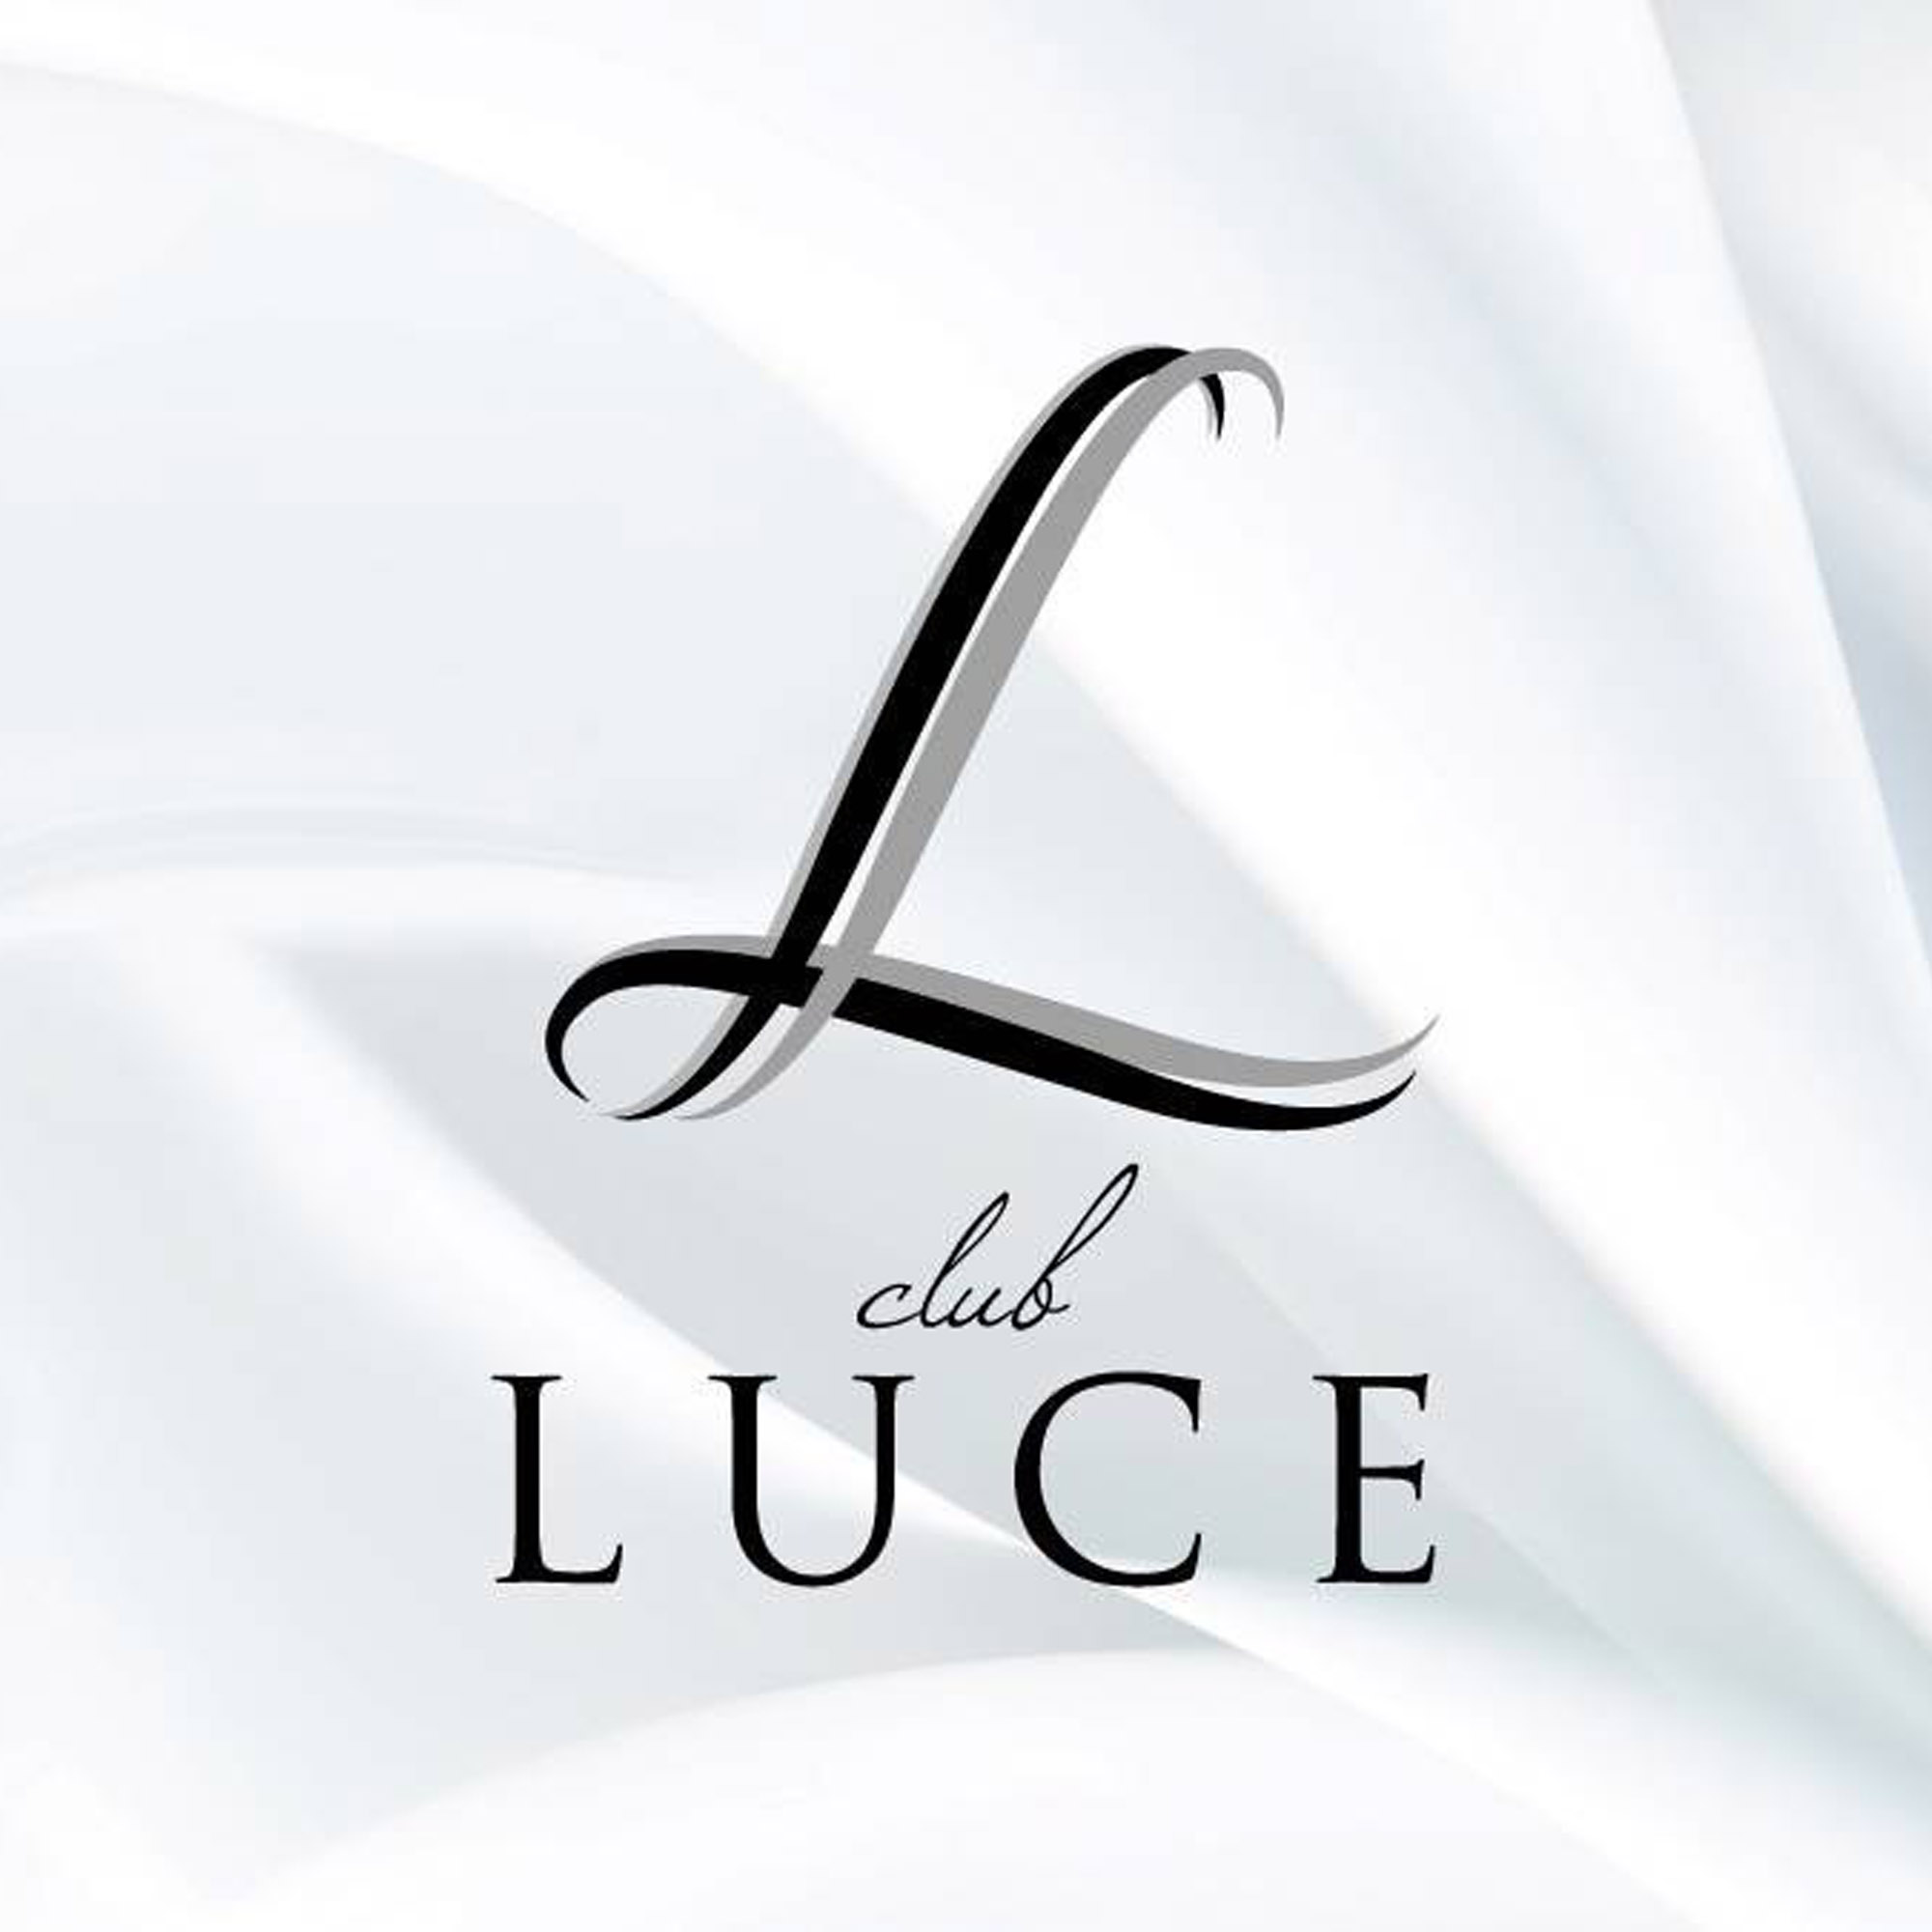 伊勢崎 キャバクラ「CLUB LUCE」「CLUB LUCE」